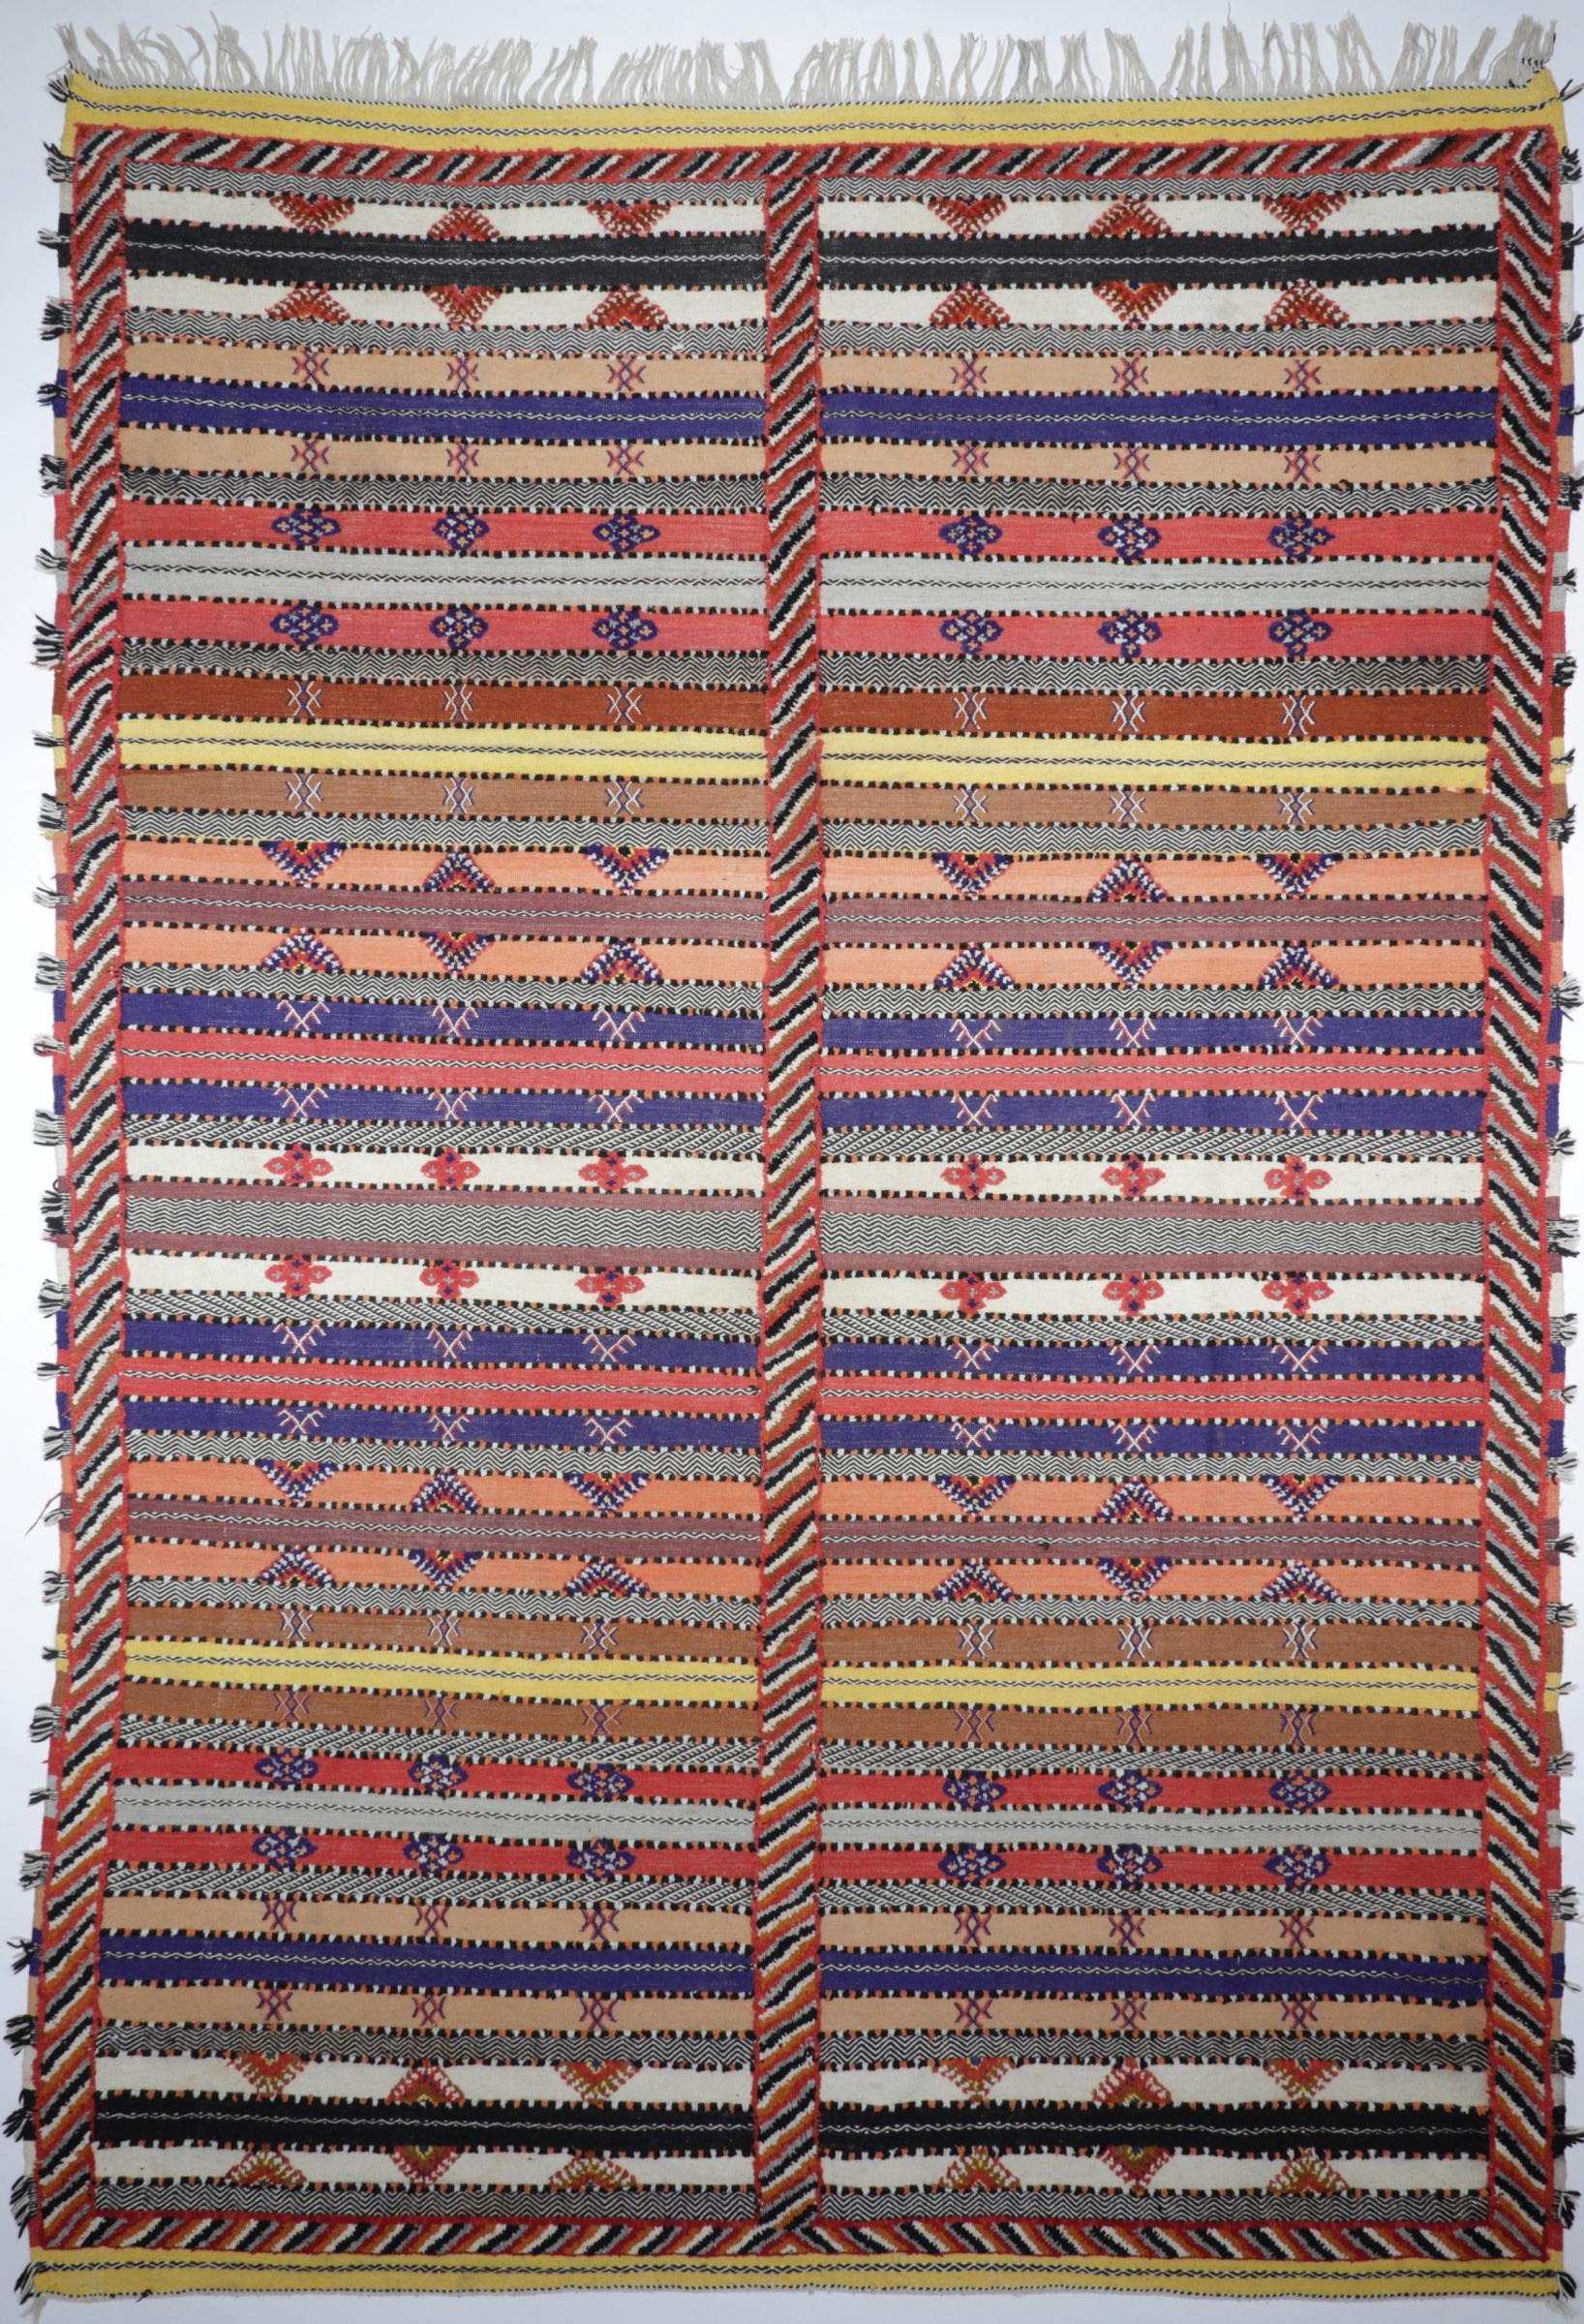 Original Berber Nomaden Kelim, teilweise gewebt - teils handgeknüpft,mehrfarbig, Draufsicht